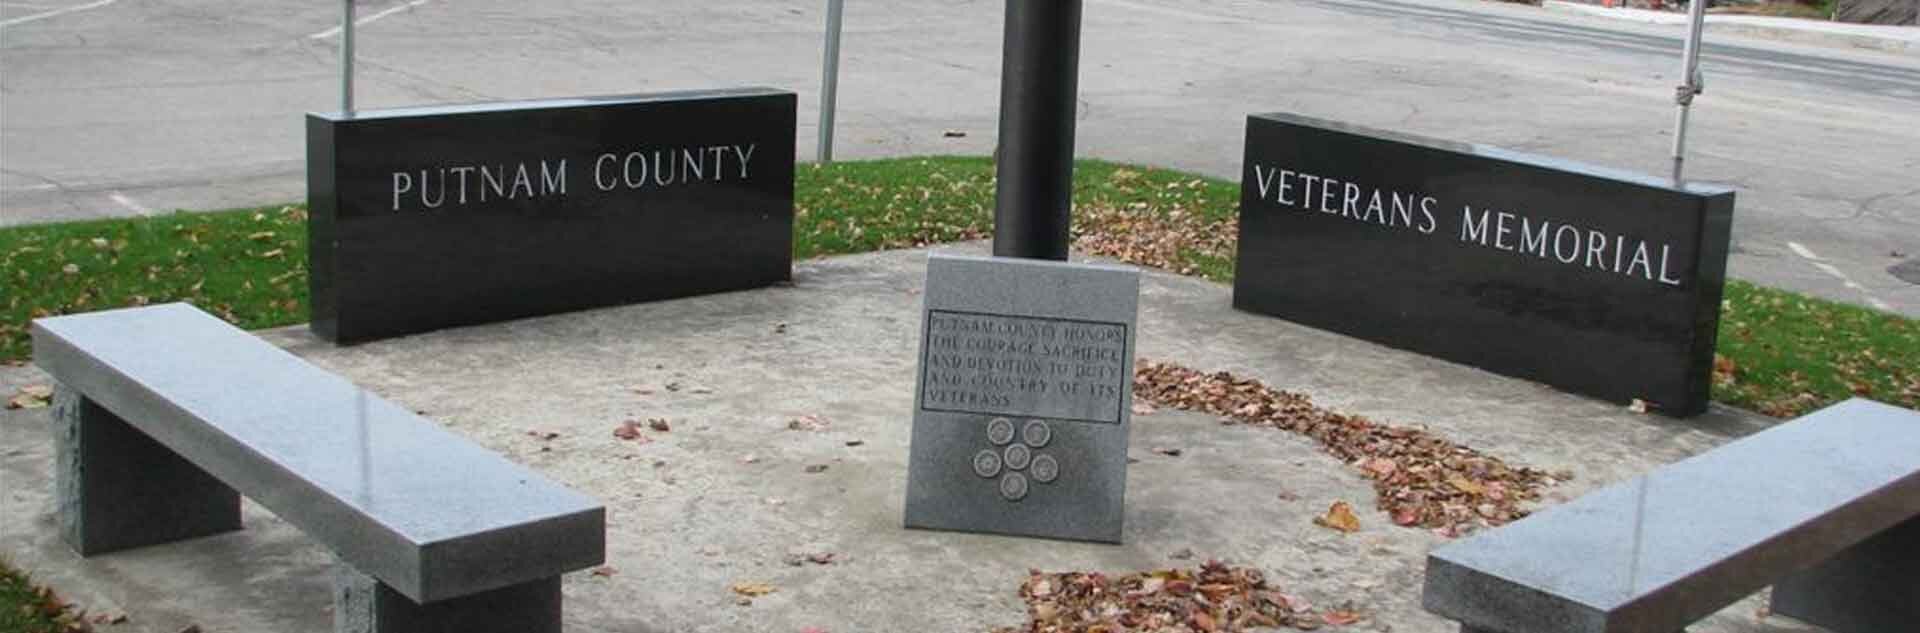 Putnam County Veterans Memorial